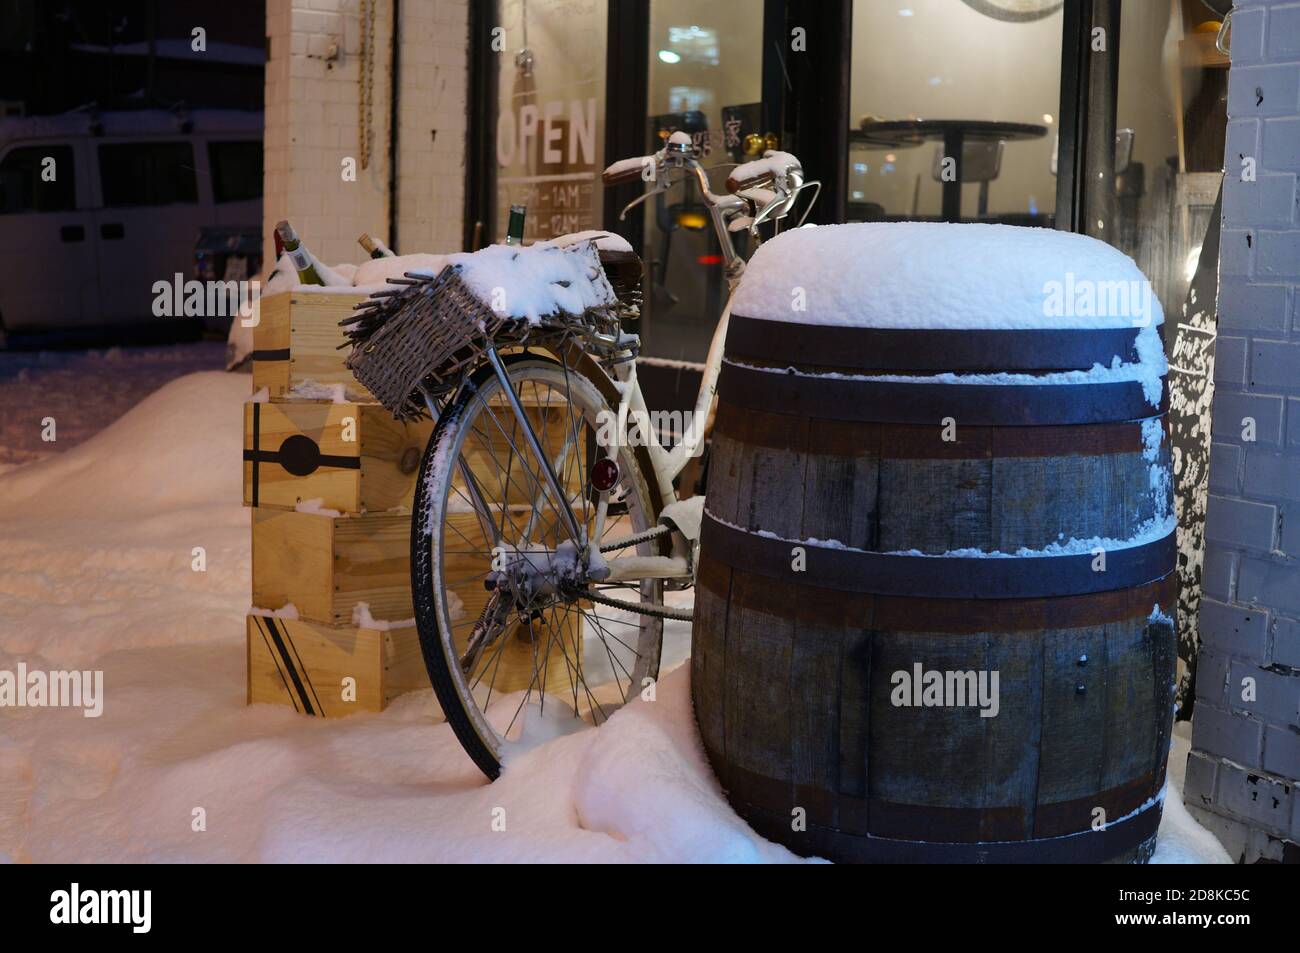 Holzweinfass, Weinsärge und Fahrrad mit frischem weißen Schnee in der Nähe der Glas-Café-Tür am Abend bedeckt Stockfoto